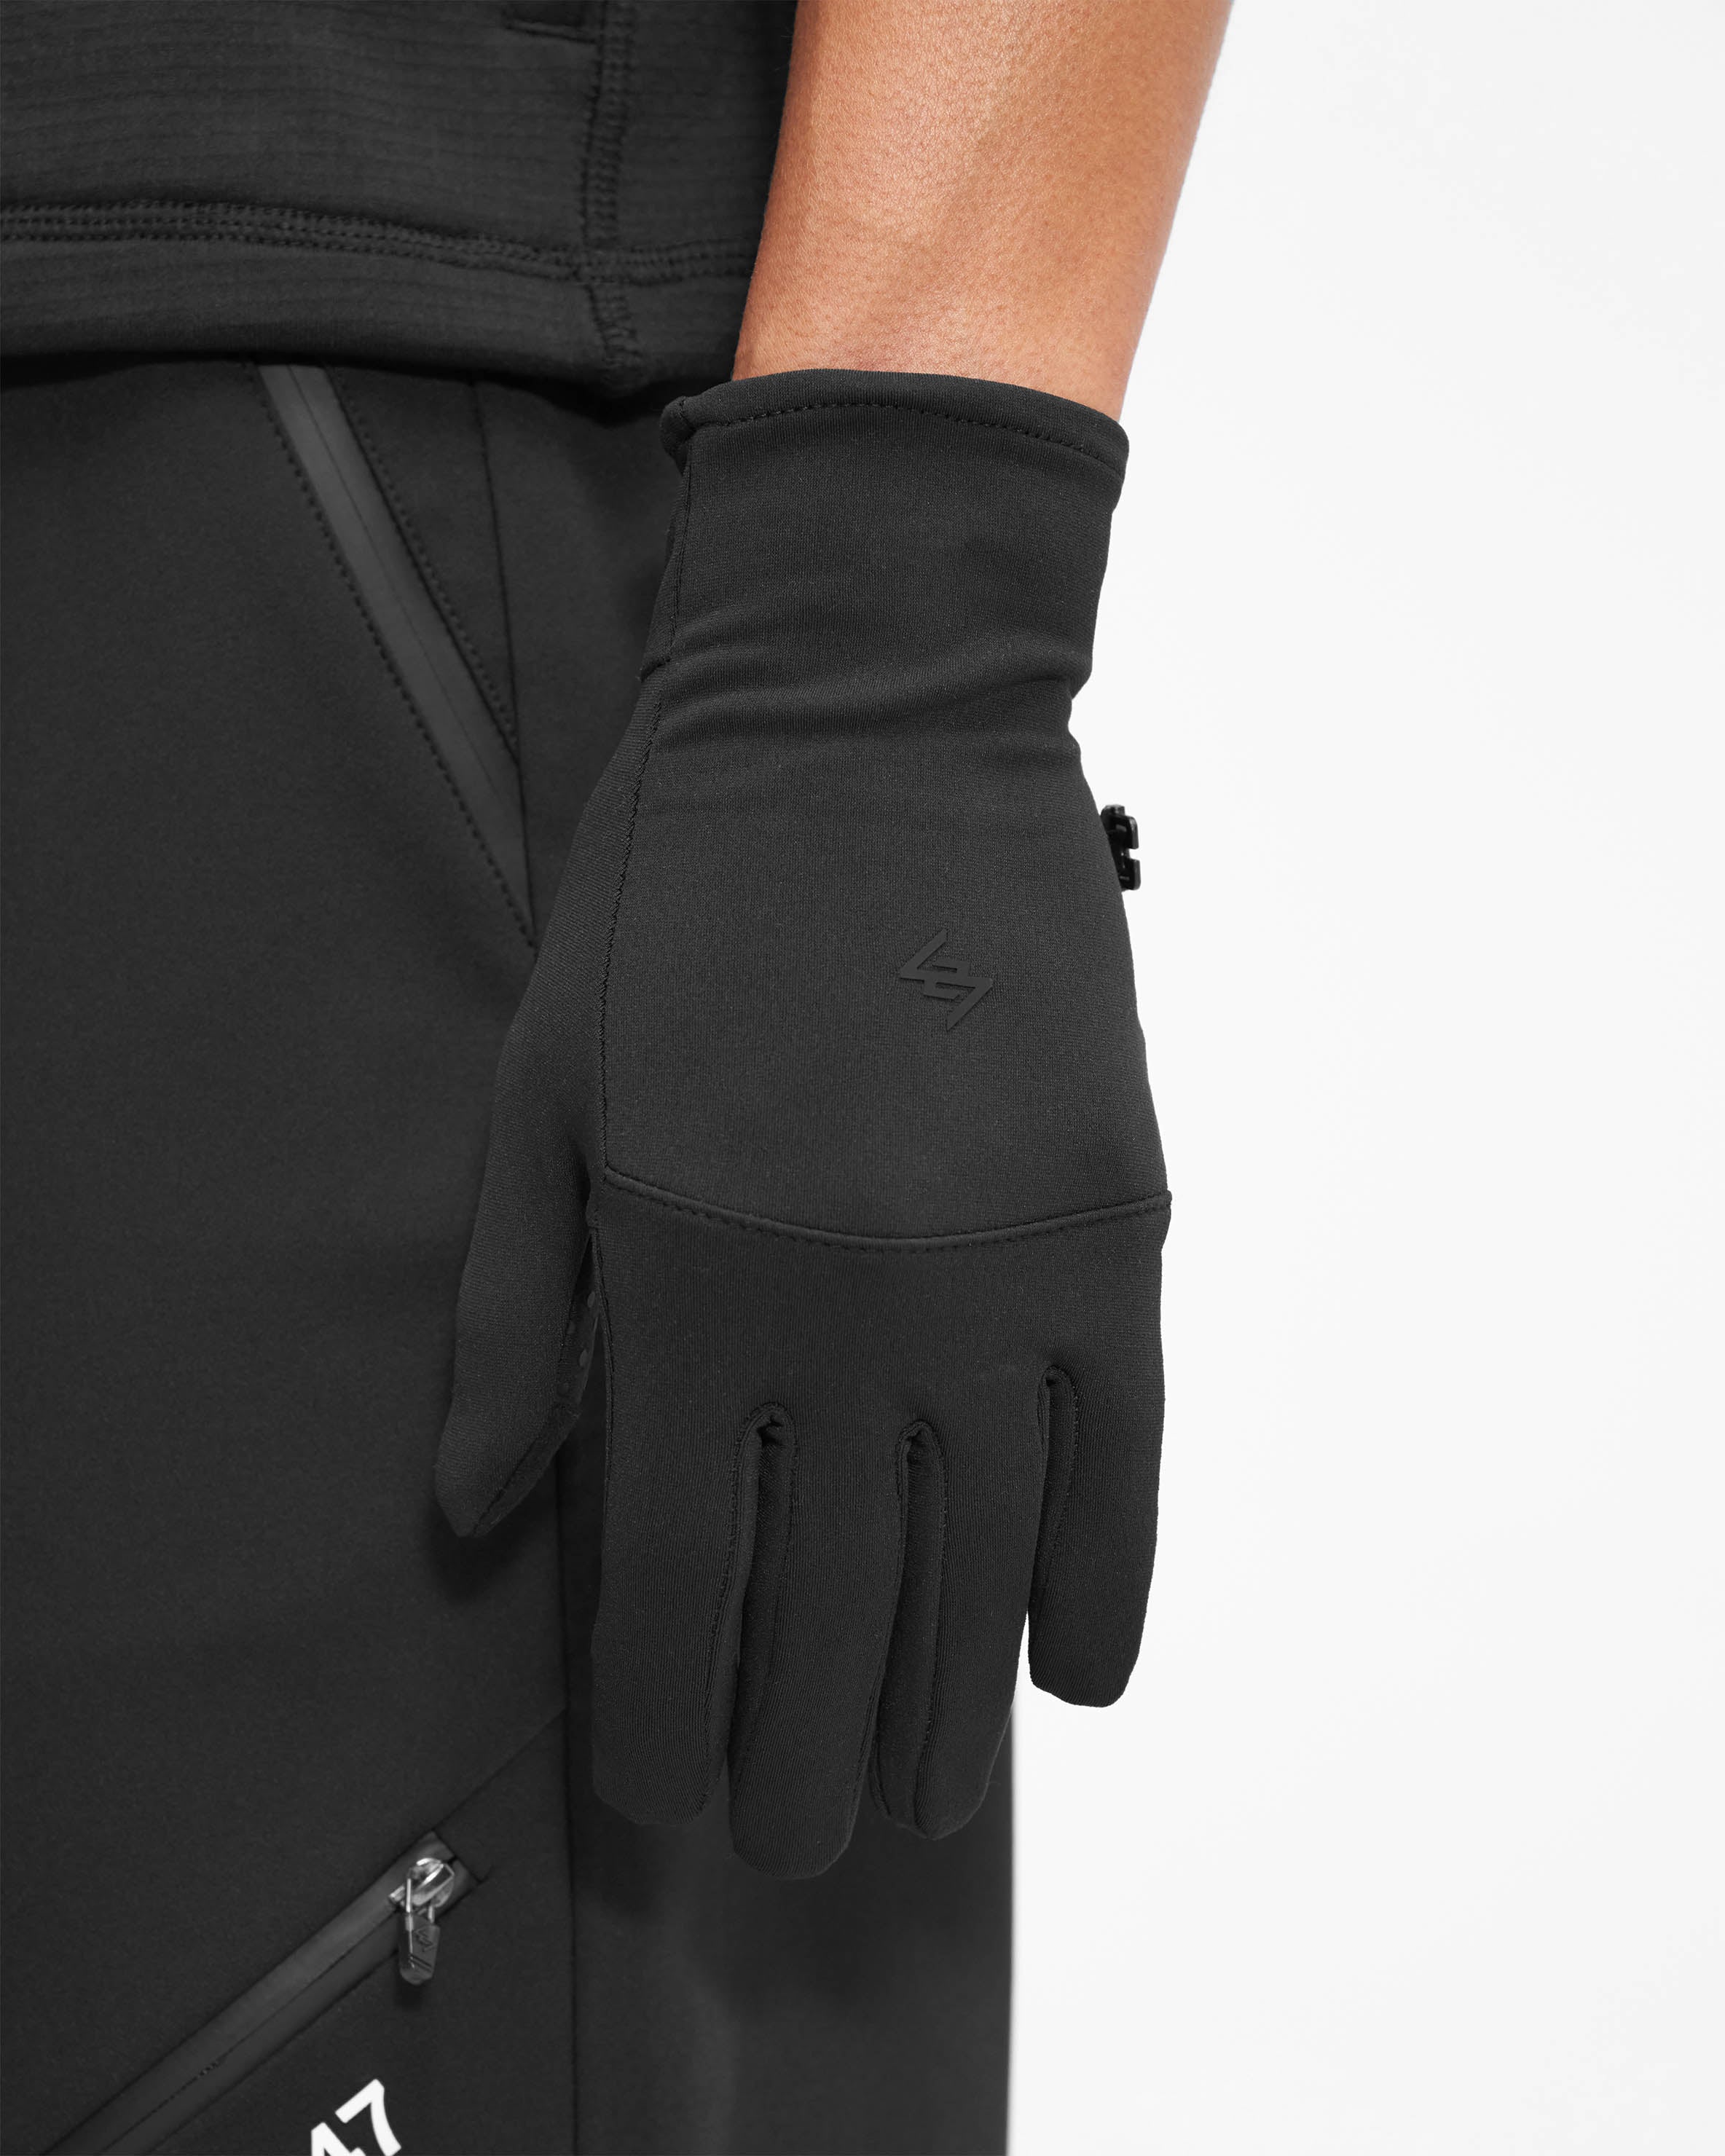 247 Gloves - Black